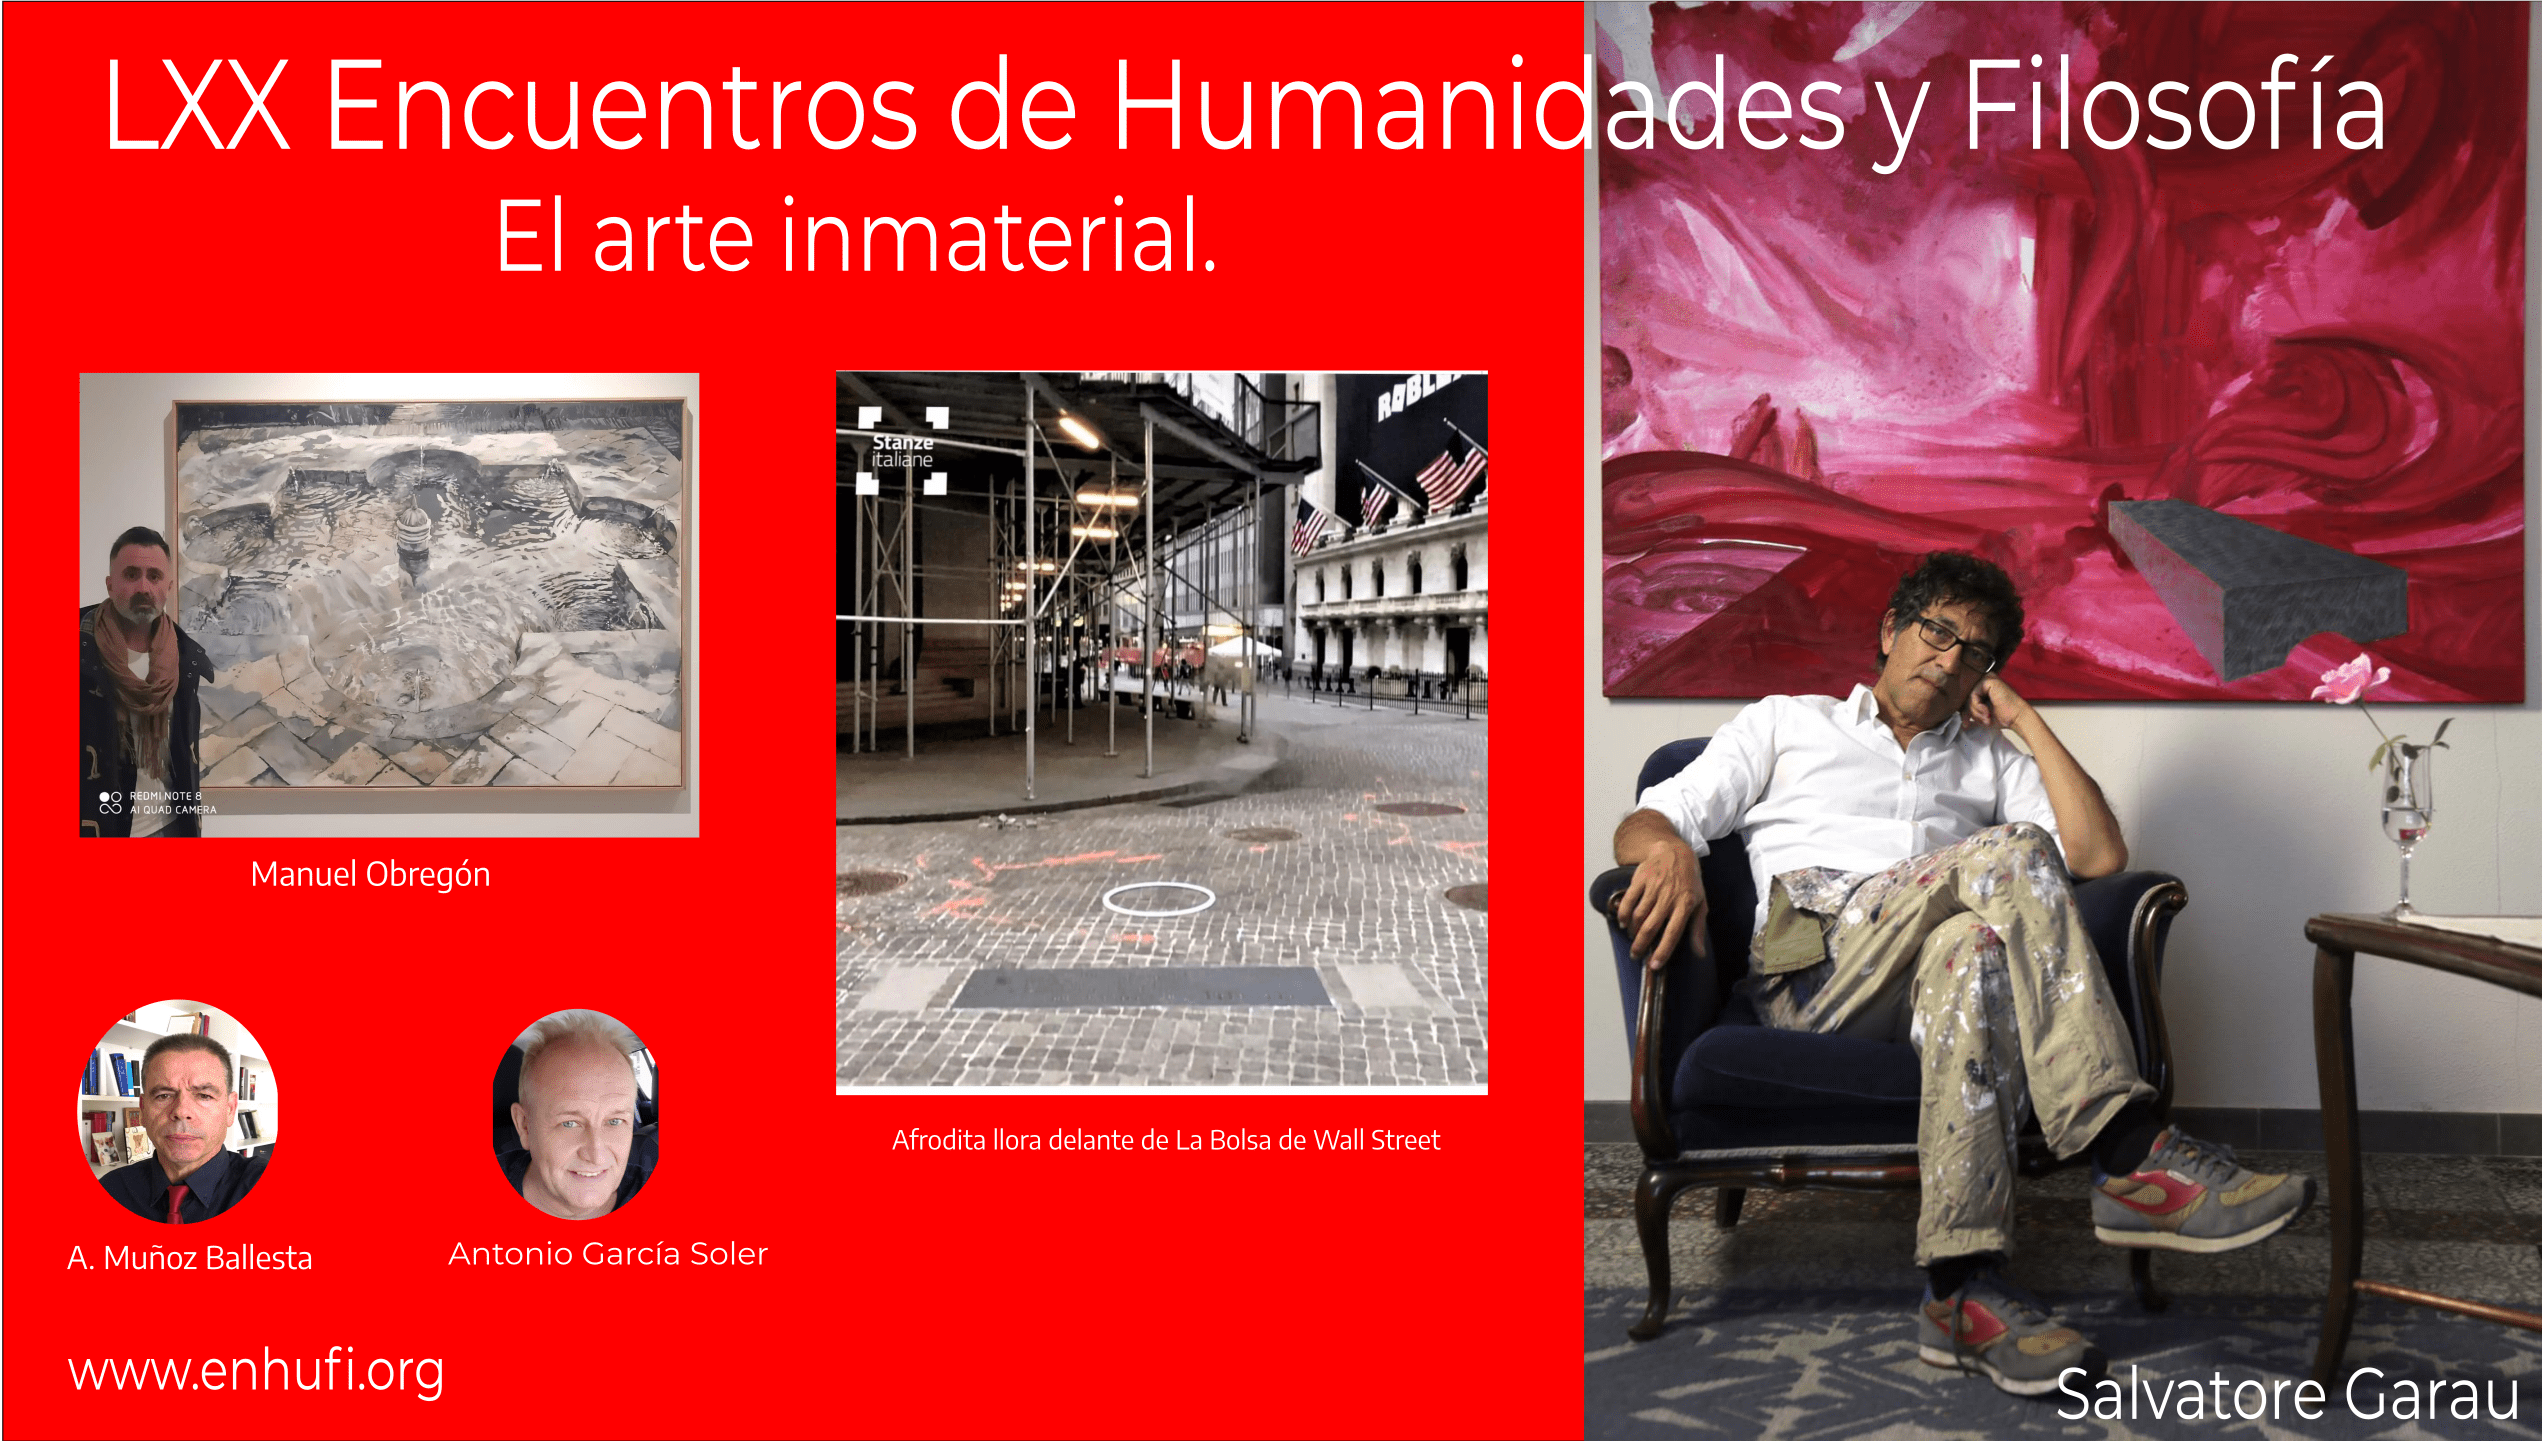 LXX Encuentros Humanidades y Filosofía,  Salvatore Garau , el arte inmaterial.